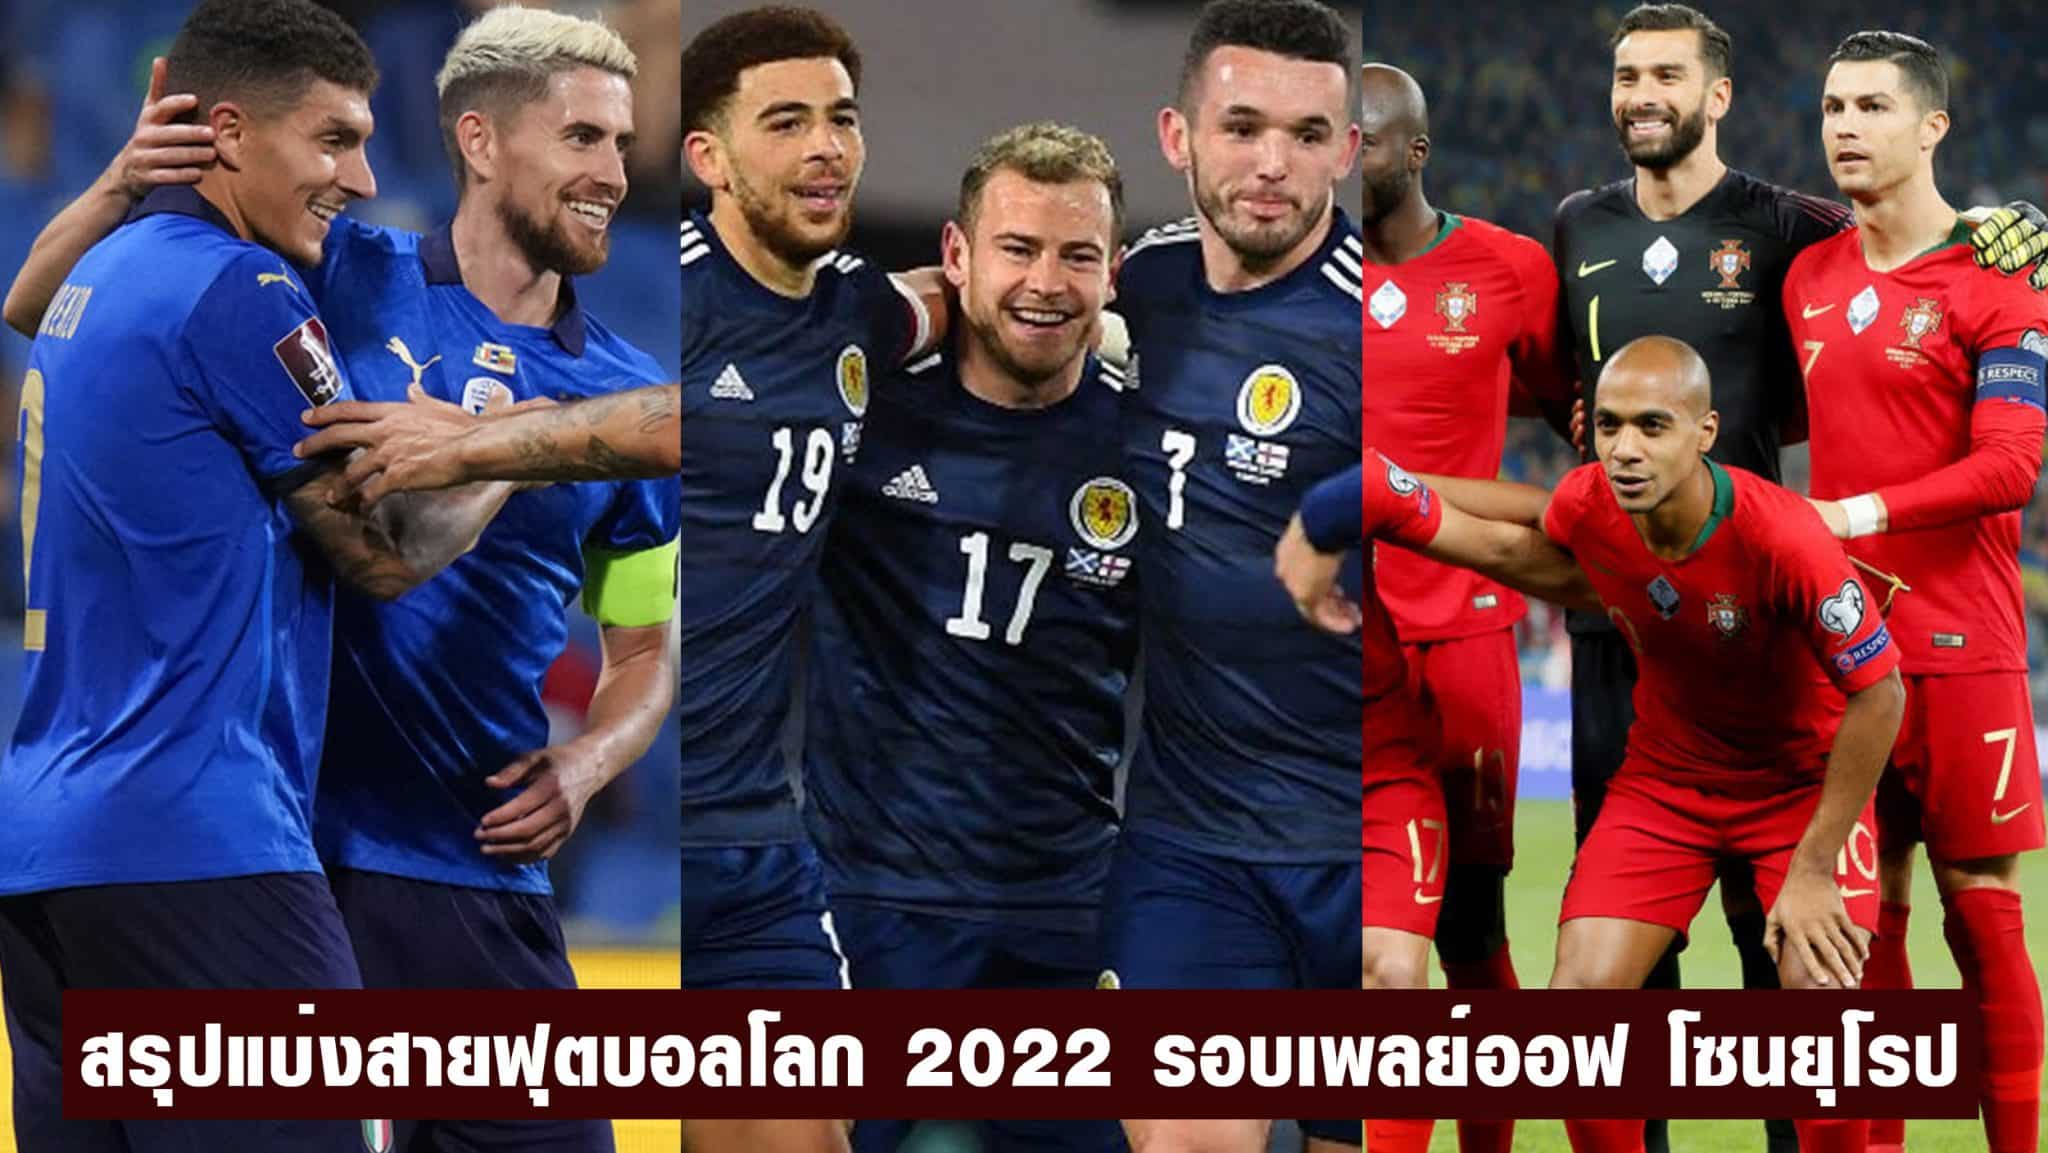 ผล ฟุตบอลโลก รอบคัดเลือก โซนยุโรป 2022 พร้อมโปรแกรมแข่งขัน